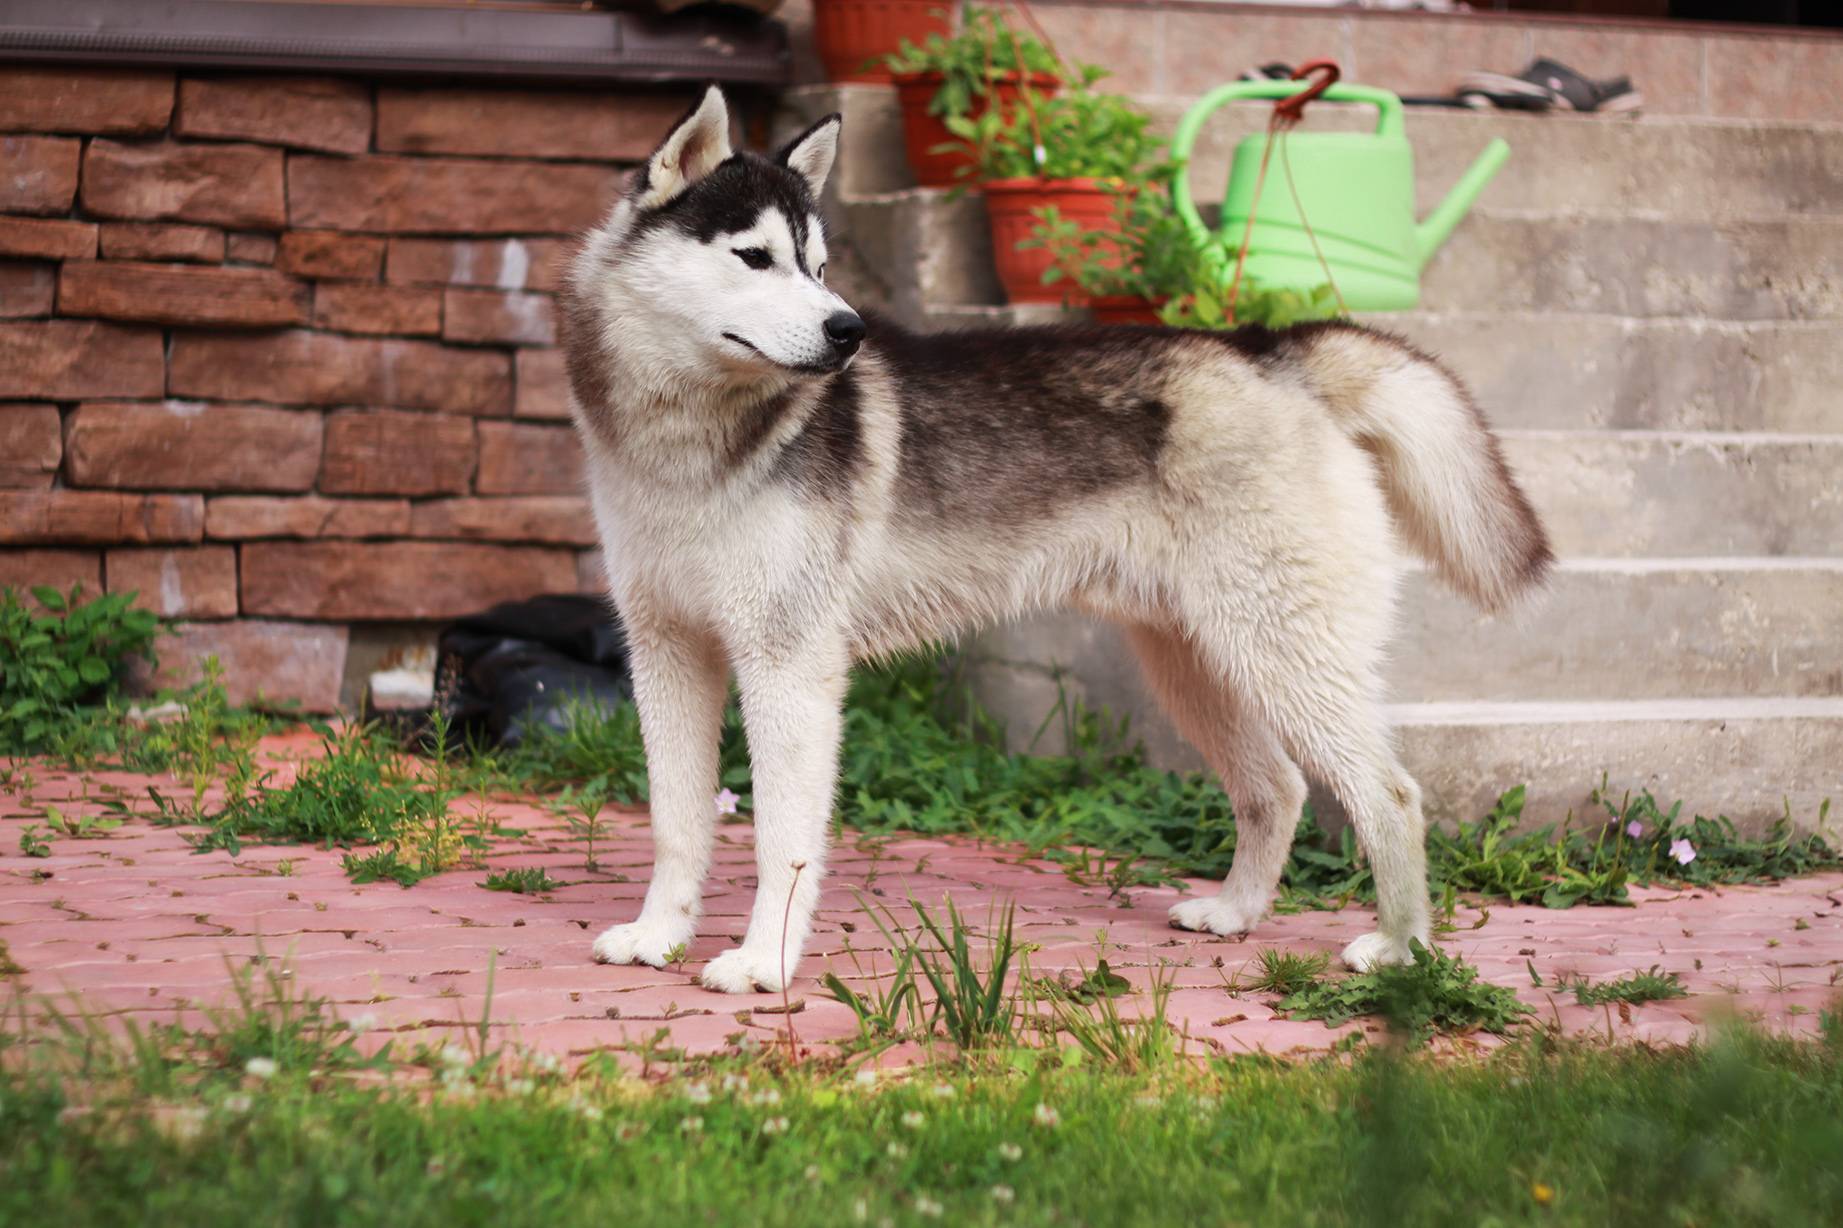 Аляскинский кли кай – это декоративная порода собак или мини хаски